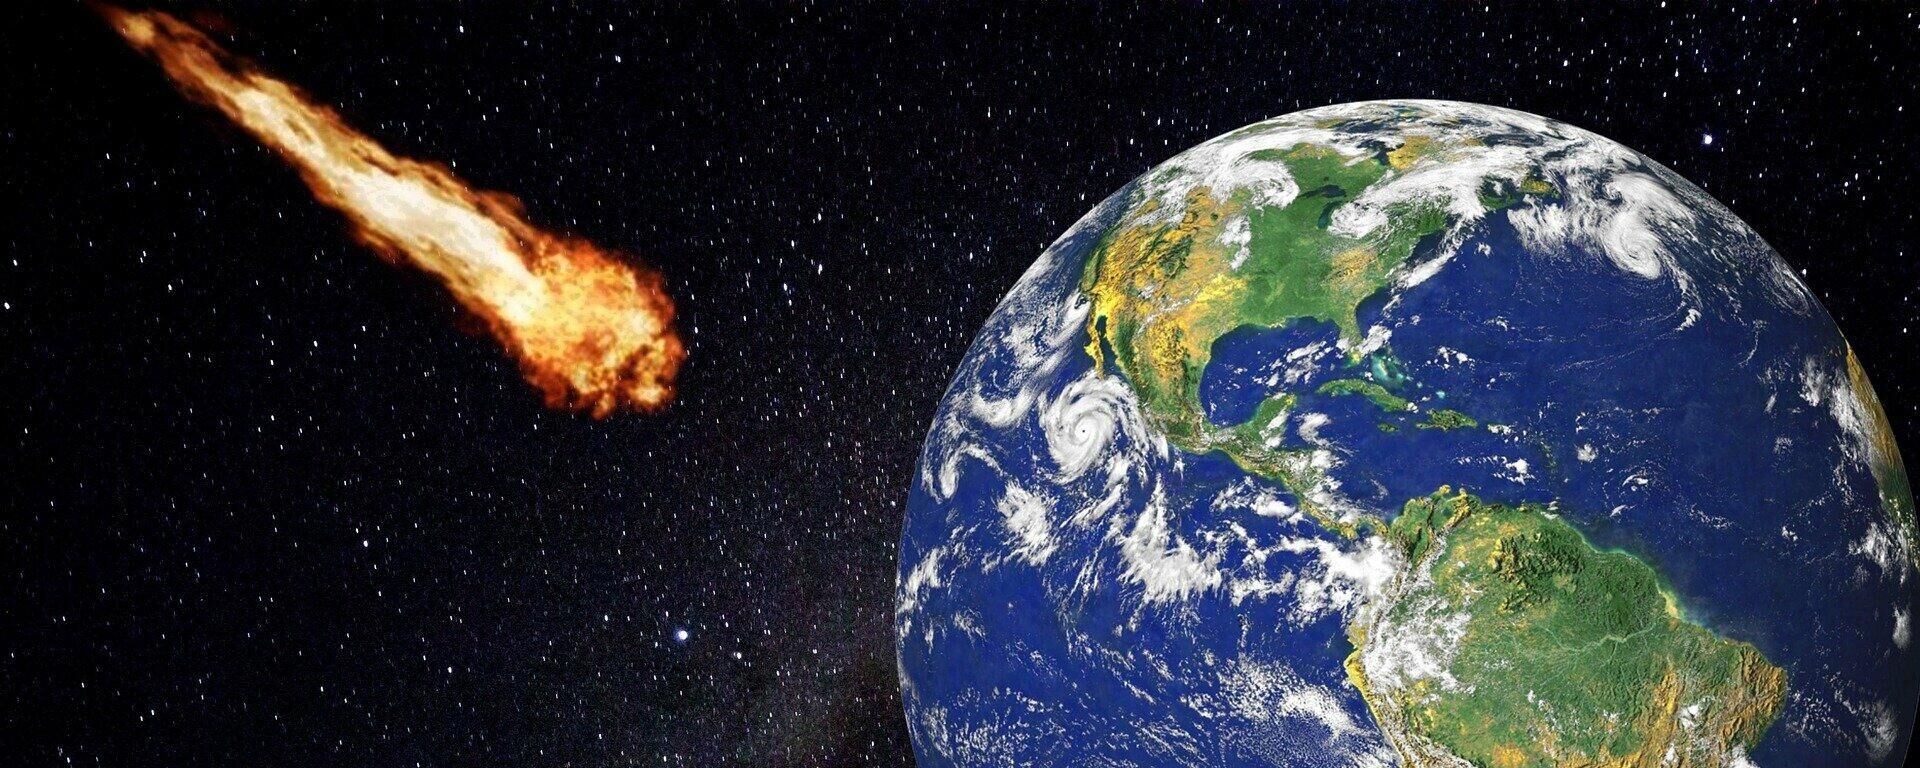 Астероид и Земля - Sputnik Грузия, 1920, 30.08.2021